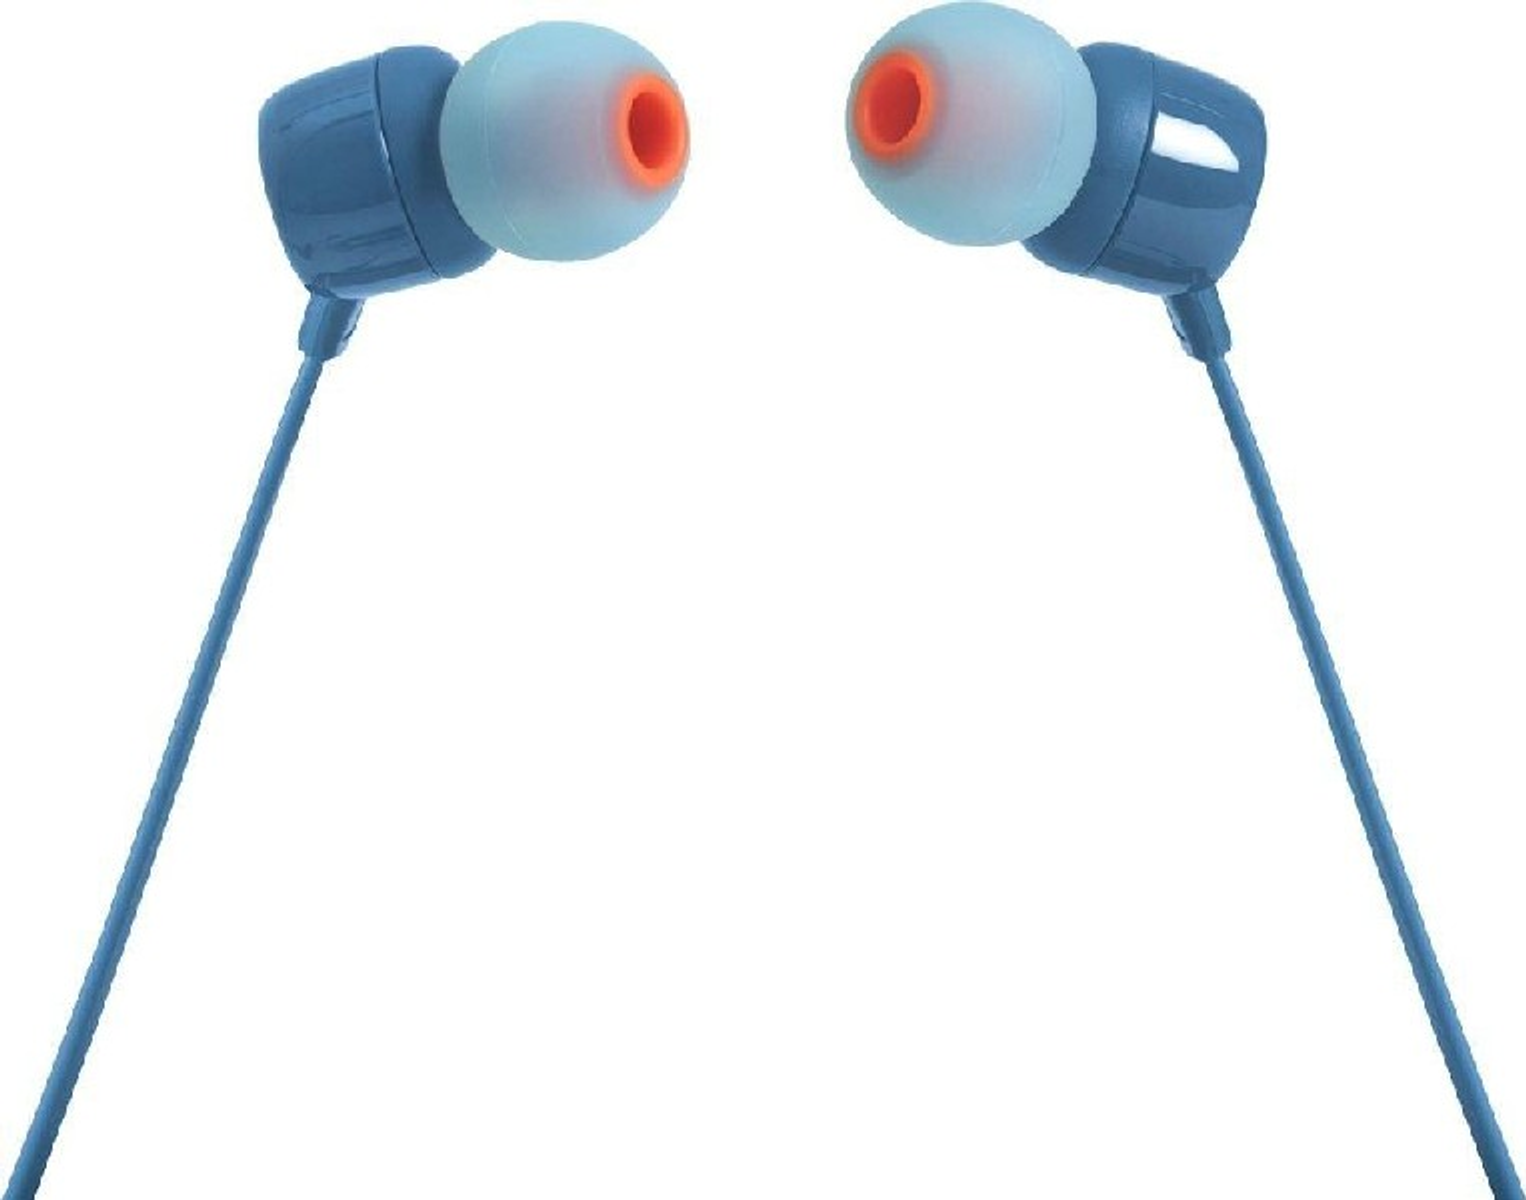 Kopfhörer 110 In-ear JBL BLU, T Blau